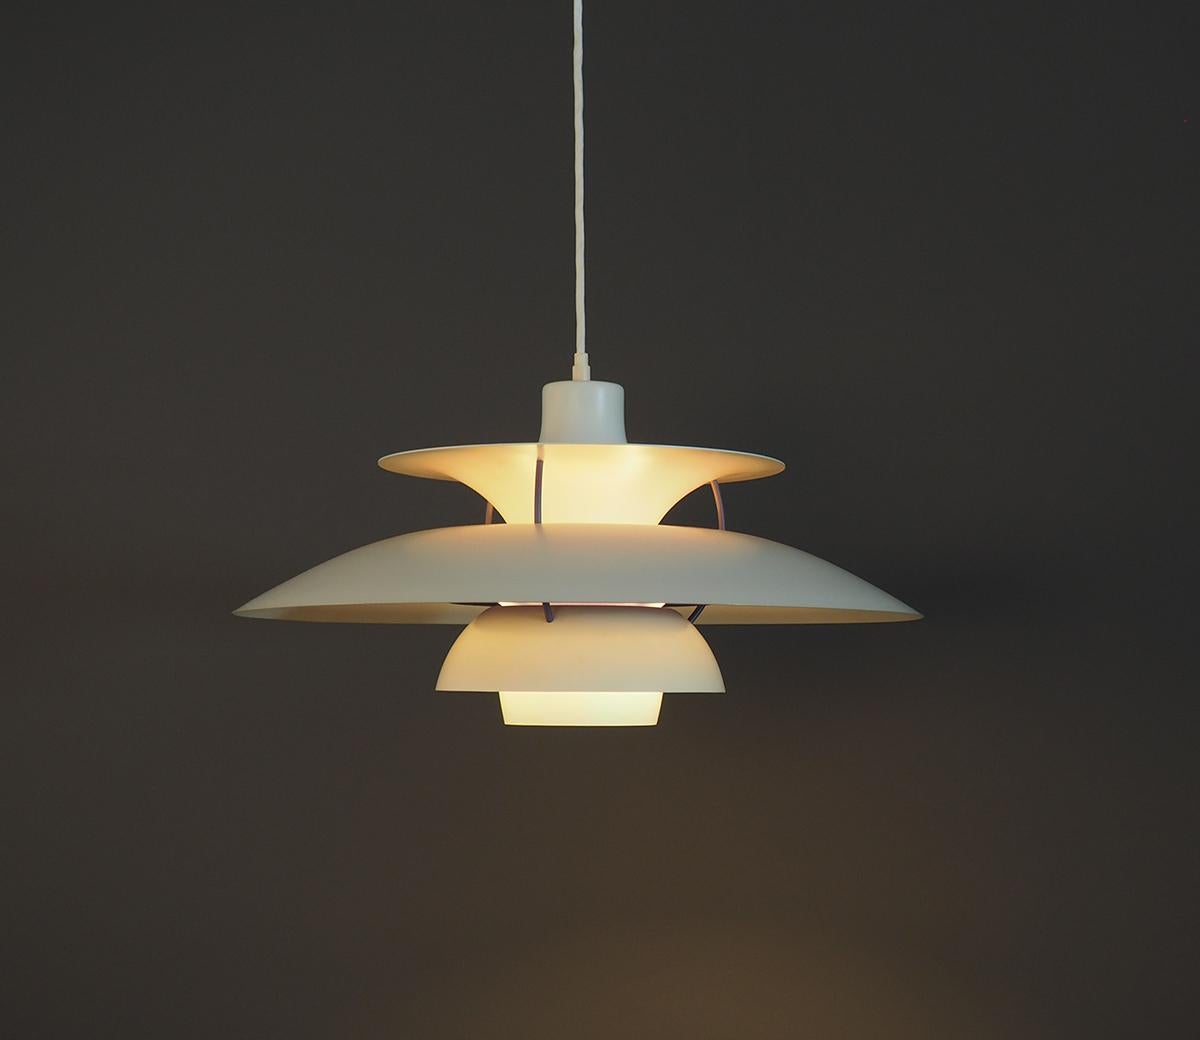 Un classique du design danois conçu par Poul Henningsen dans les années 1950.
La lampe PH5 est composée de plusieurs couches de métal peintes en blanc mat avec des accents bleus et rouges.
Diamètre 50 cm.
Il s'agit d'éditions anciennes datant du